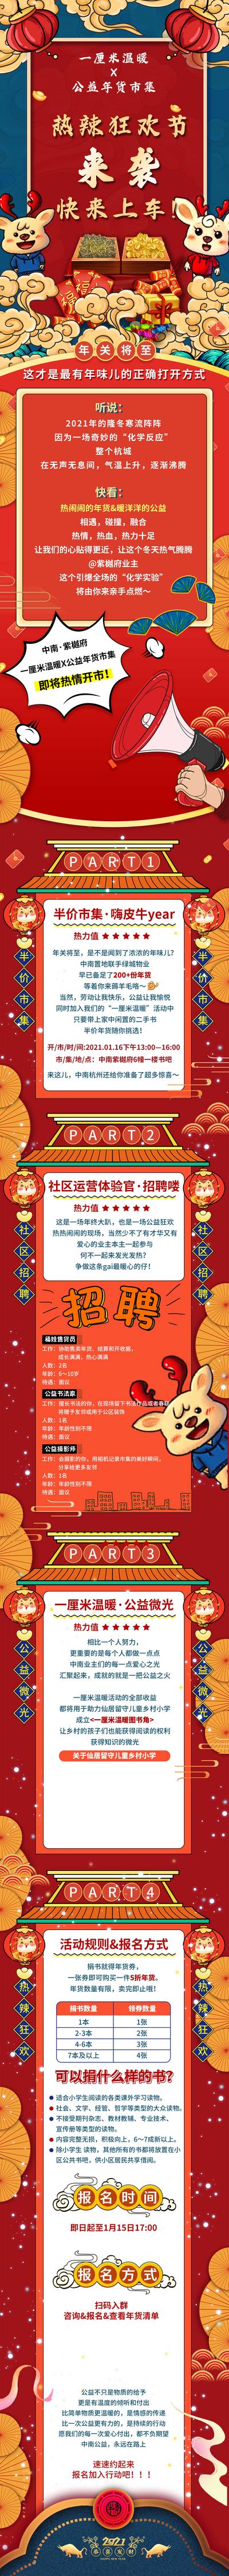 南门网 海报 长图 中国传统节日 春节 插画 国潮 年货节 新年 集市 活动